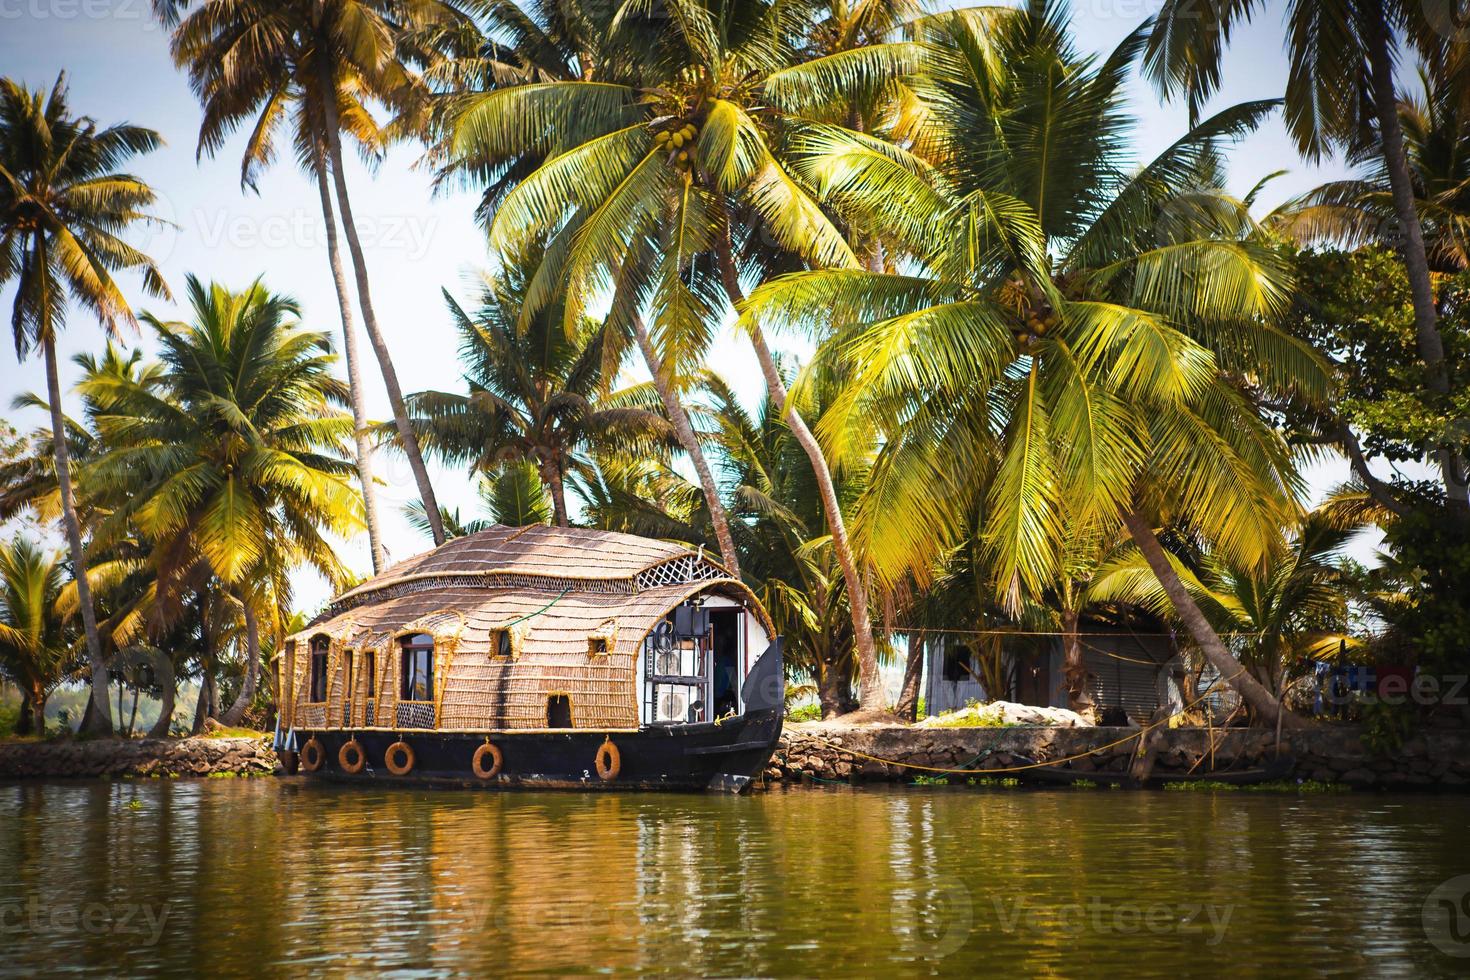 crucero de recreo de casa flotante en india, kerala en los canales fluviales cubiertos de algas de allapuzha en india. barco en el lago bajo el sol brillante y palmeras entre los trópicos. vista casa flotante foto